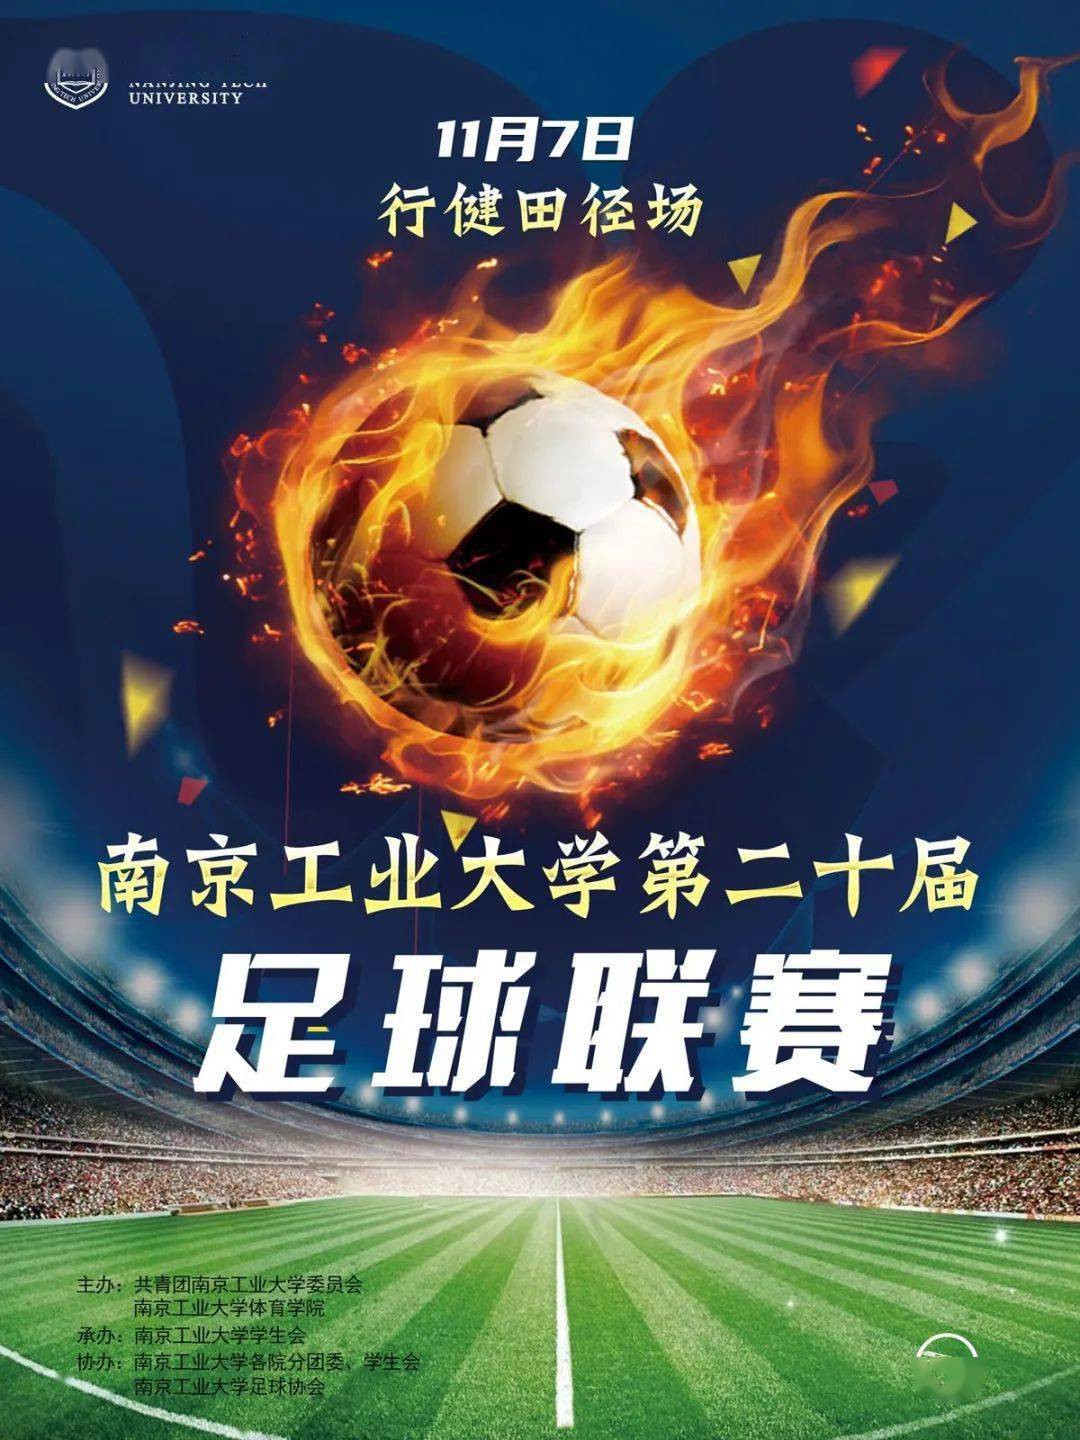 亚博app最新地址_
【足球联赛】南京工业大学第二十届足球联赛就要开始啦！(图1)